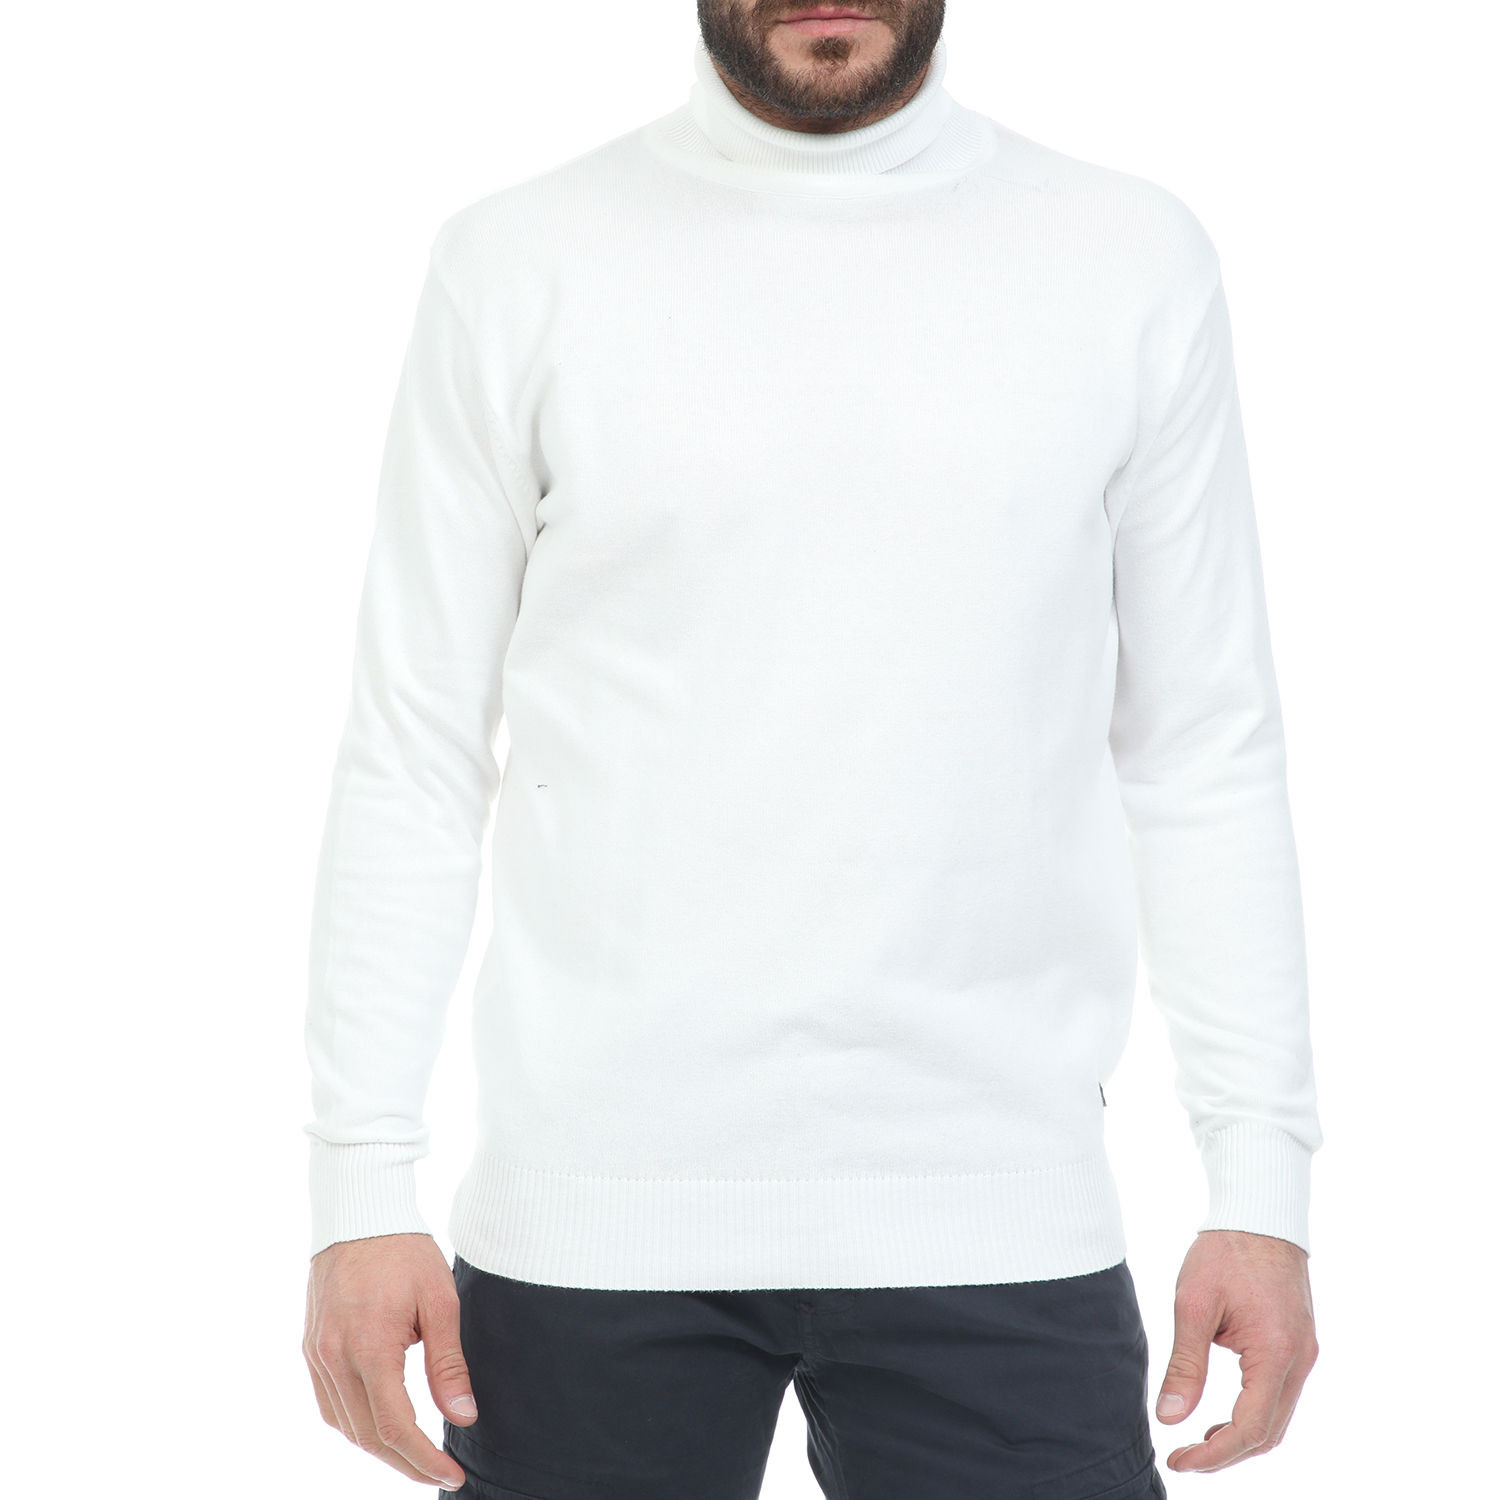 Ανδρικά/Ρούχα/Πλεκτά-Ζακέτες/Πουλόβερ CATAMARAN SAILWEAR - Ανδρική πλεκτή μπλούζα ζιβάγκο CATAMARAN SAILWEAR λευκή (μεγάλα μεγέθη)